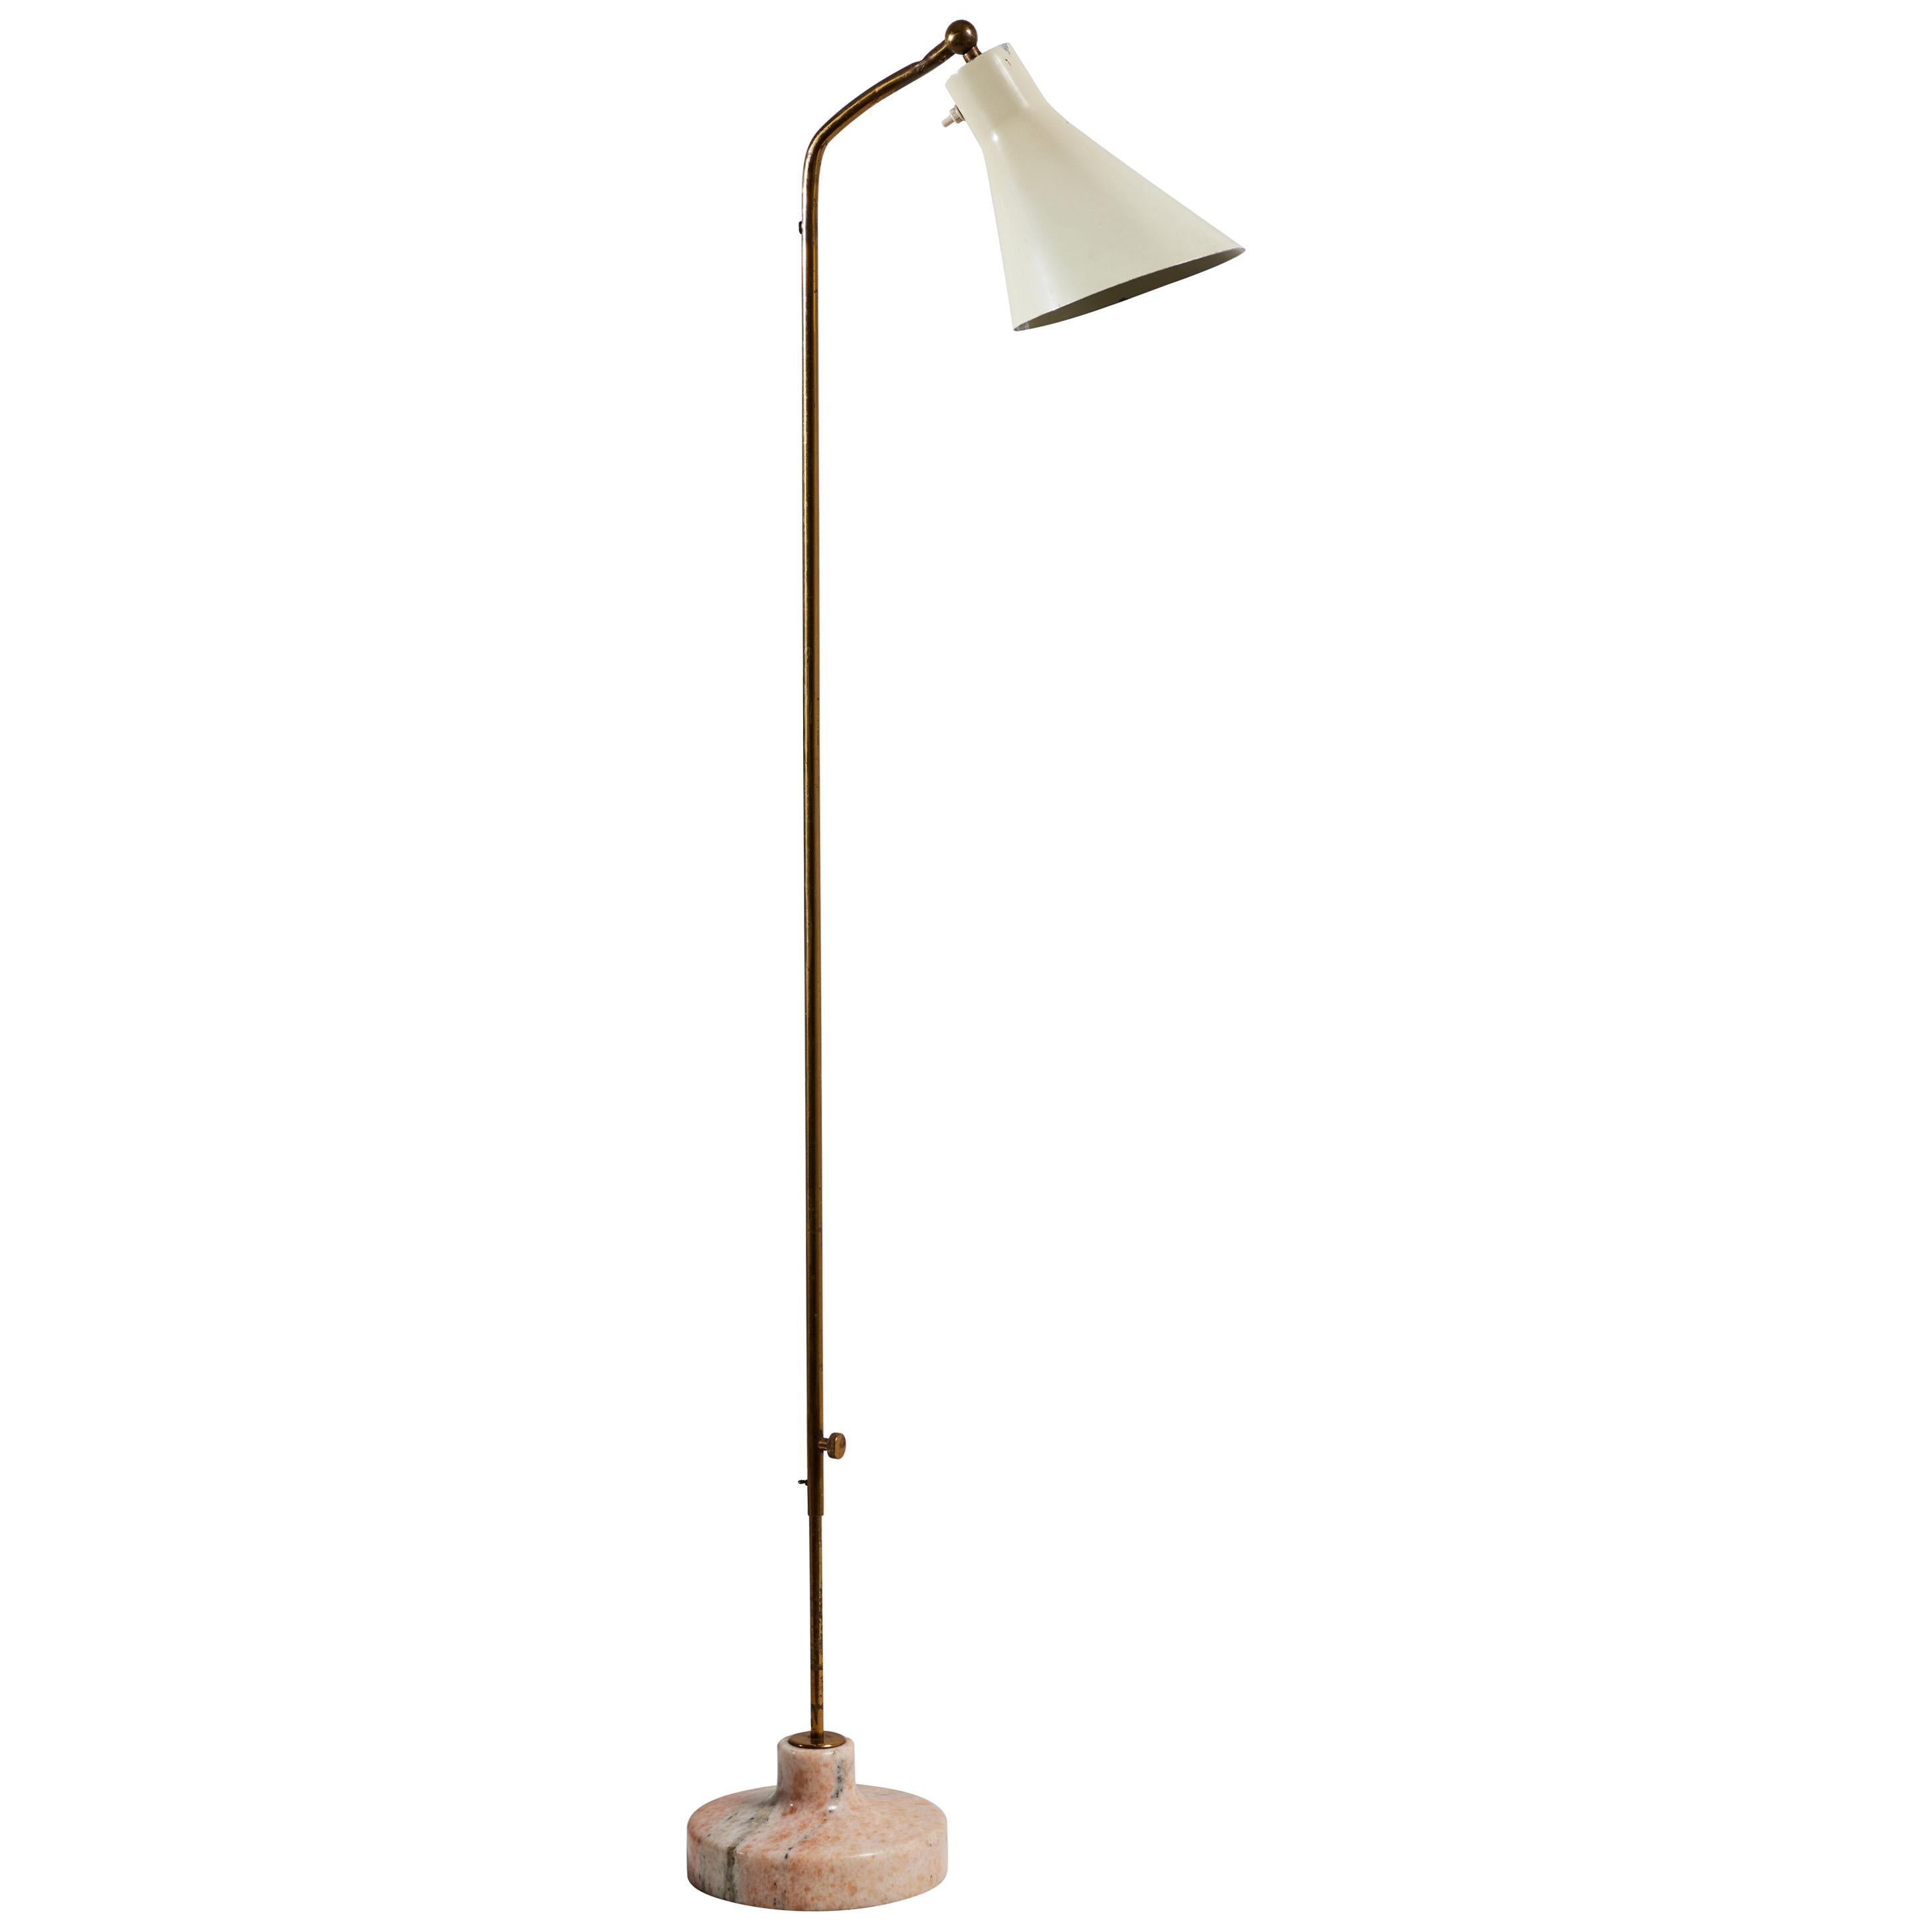 Model Lte3 "Alzabile" Floor Lamp by Ignazio Gardella for Azucena